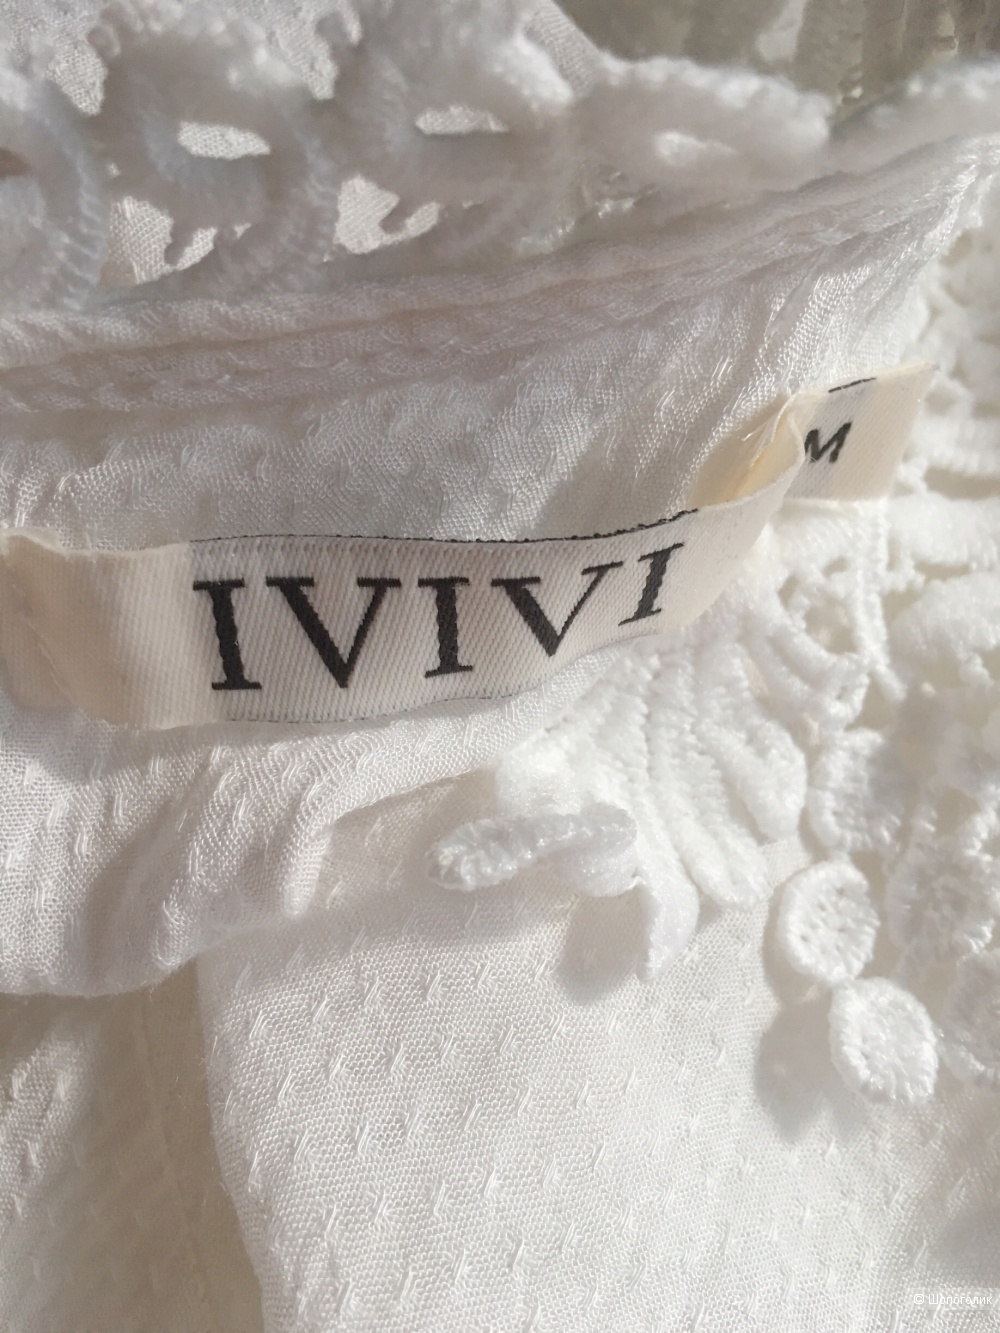 Рубашка Ivivi размер М